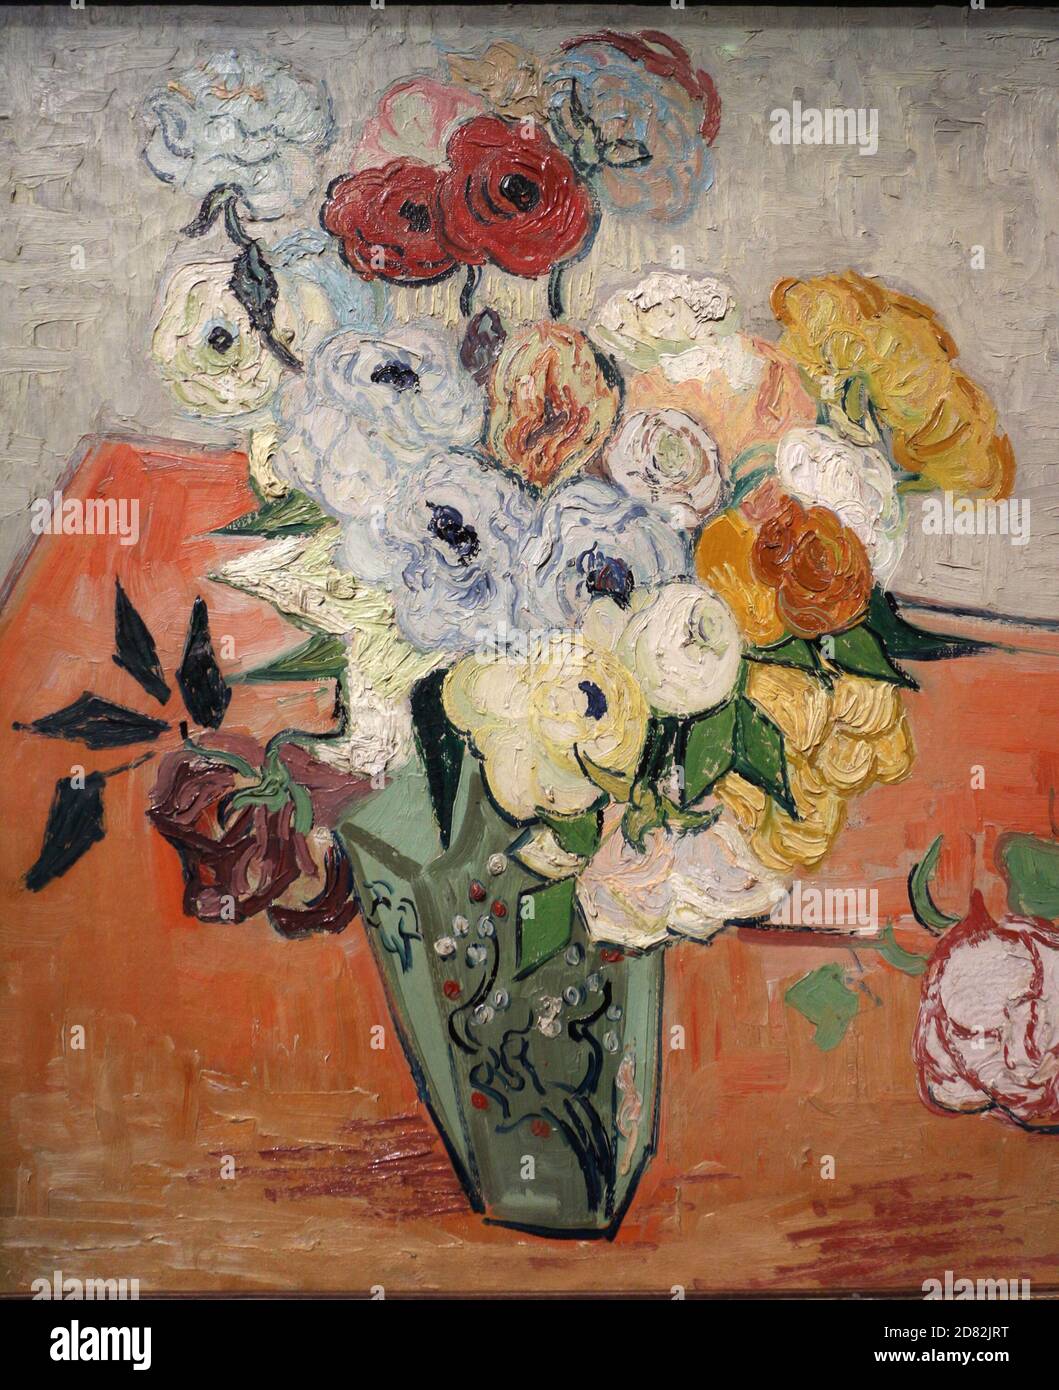 Titre: Vase japonais avec roses et anémones Créateur: Vincent van Gogh Date: 1890 Moyen: Huile sur toile Dimensions: 51.7 x 52 cm emplacement: Musée d'Orsay, Paris Banque D'Images